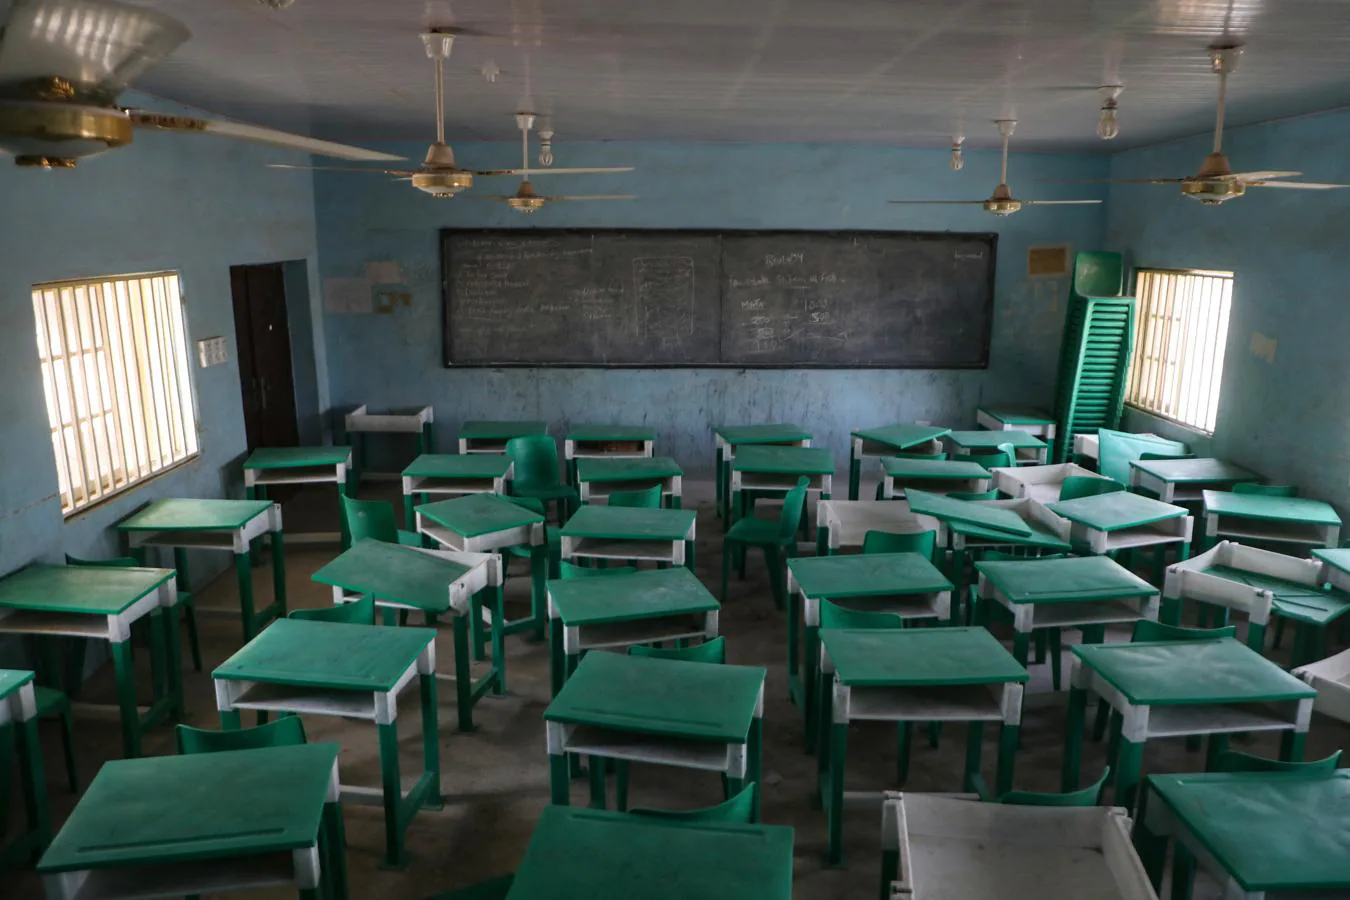 Miedo de ir a la escuela. Un aula desierta en la Escuela Secundaria Femenina del Gobierno, en Jangebe, Estado de Zamfara, noroeste de Nigeria, el 27 de febrero de 2021. Los secuestros de estudiantes por parte de grupos islamistas y bandas armadas siguen afectando a las escuelas de Nigeria. Según el presidente nigeriano, Muhammadu Buhari, más de 12 millones de niños -en particular niñas- están traumatizados y temen ir a la escuela.